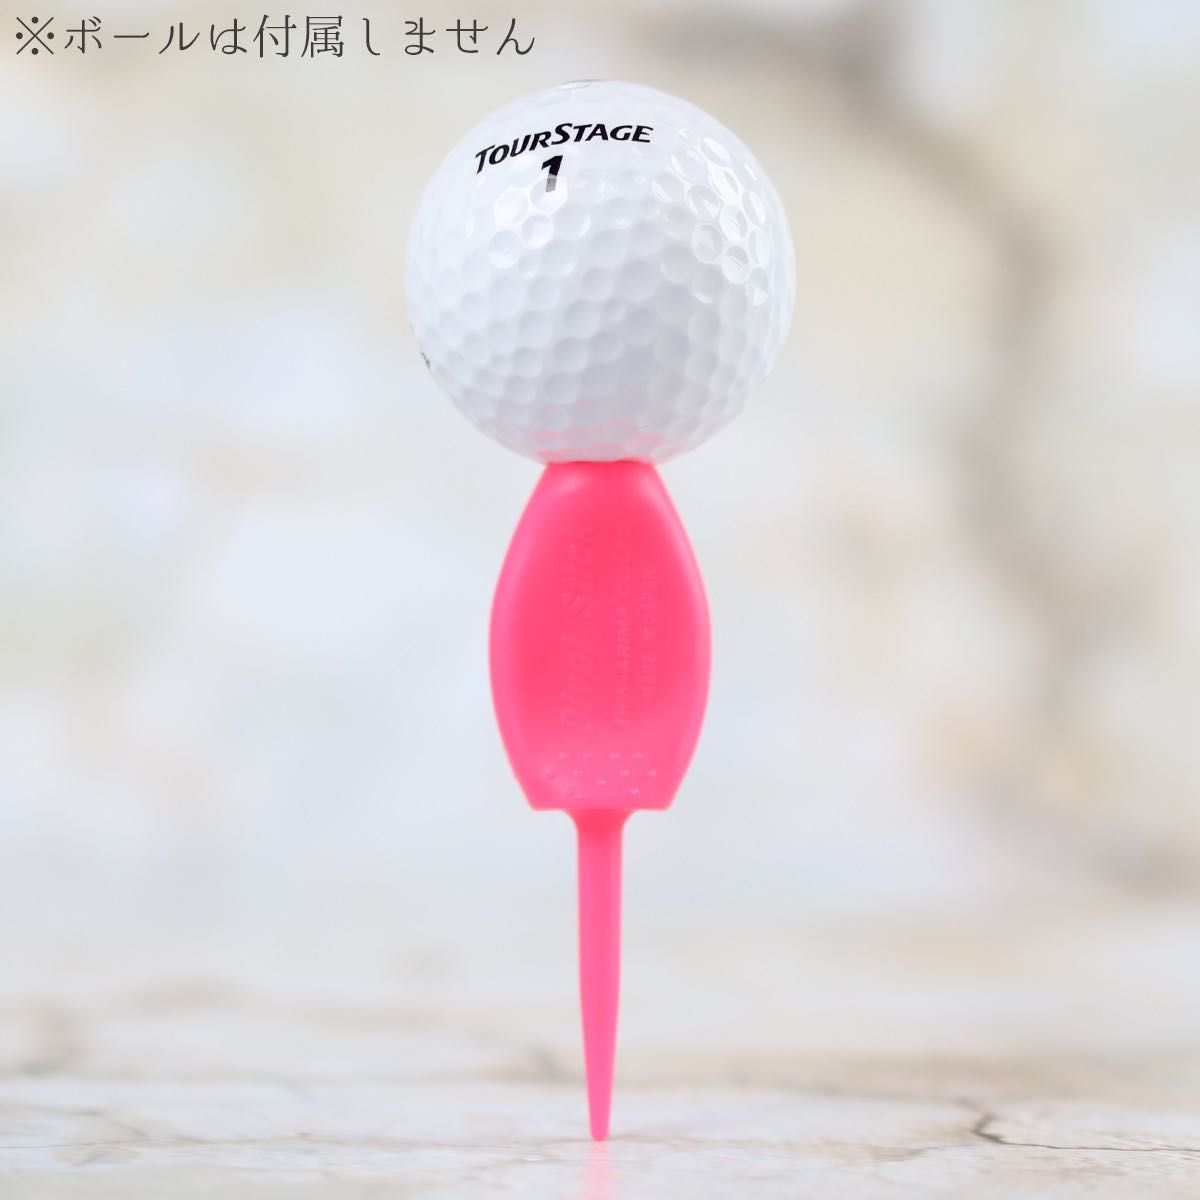 8本セット 日本製 パリティー 蛍光色 ゴルフボール 跡 ゴルフティー ティーペグ グリーンフォーク ボールマーク b098m